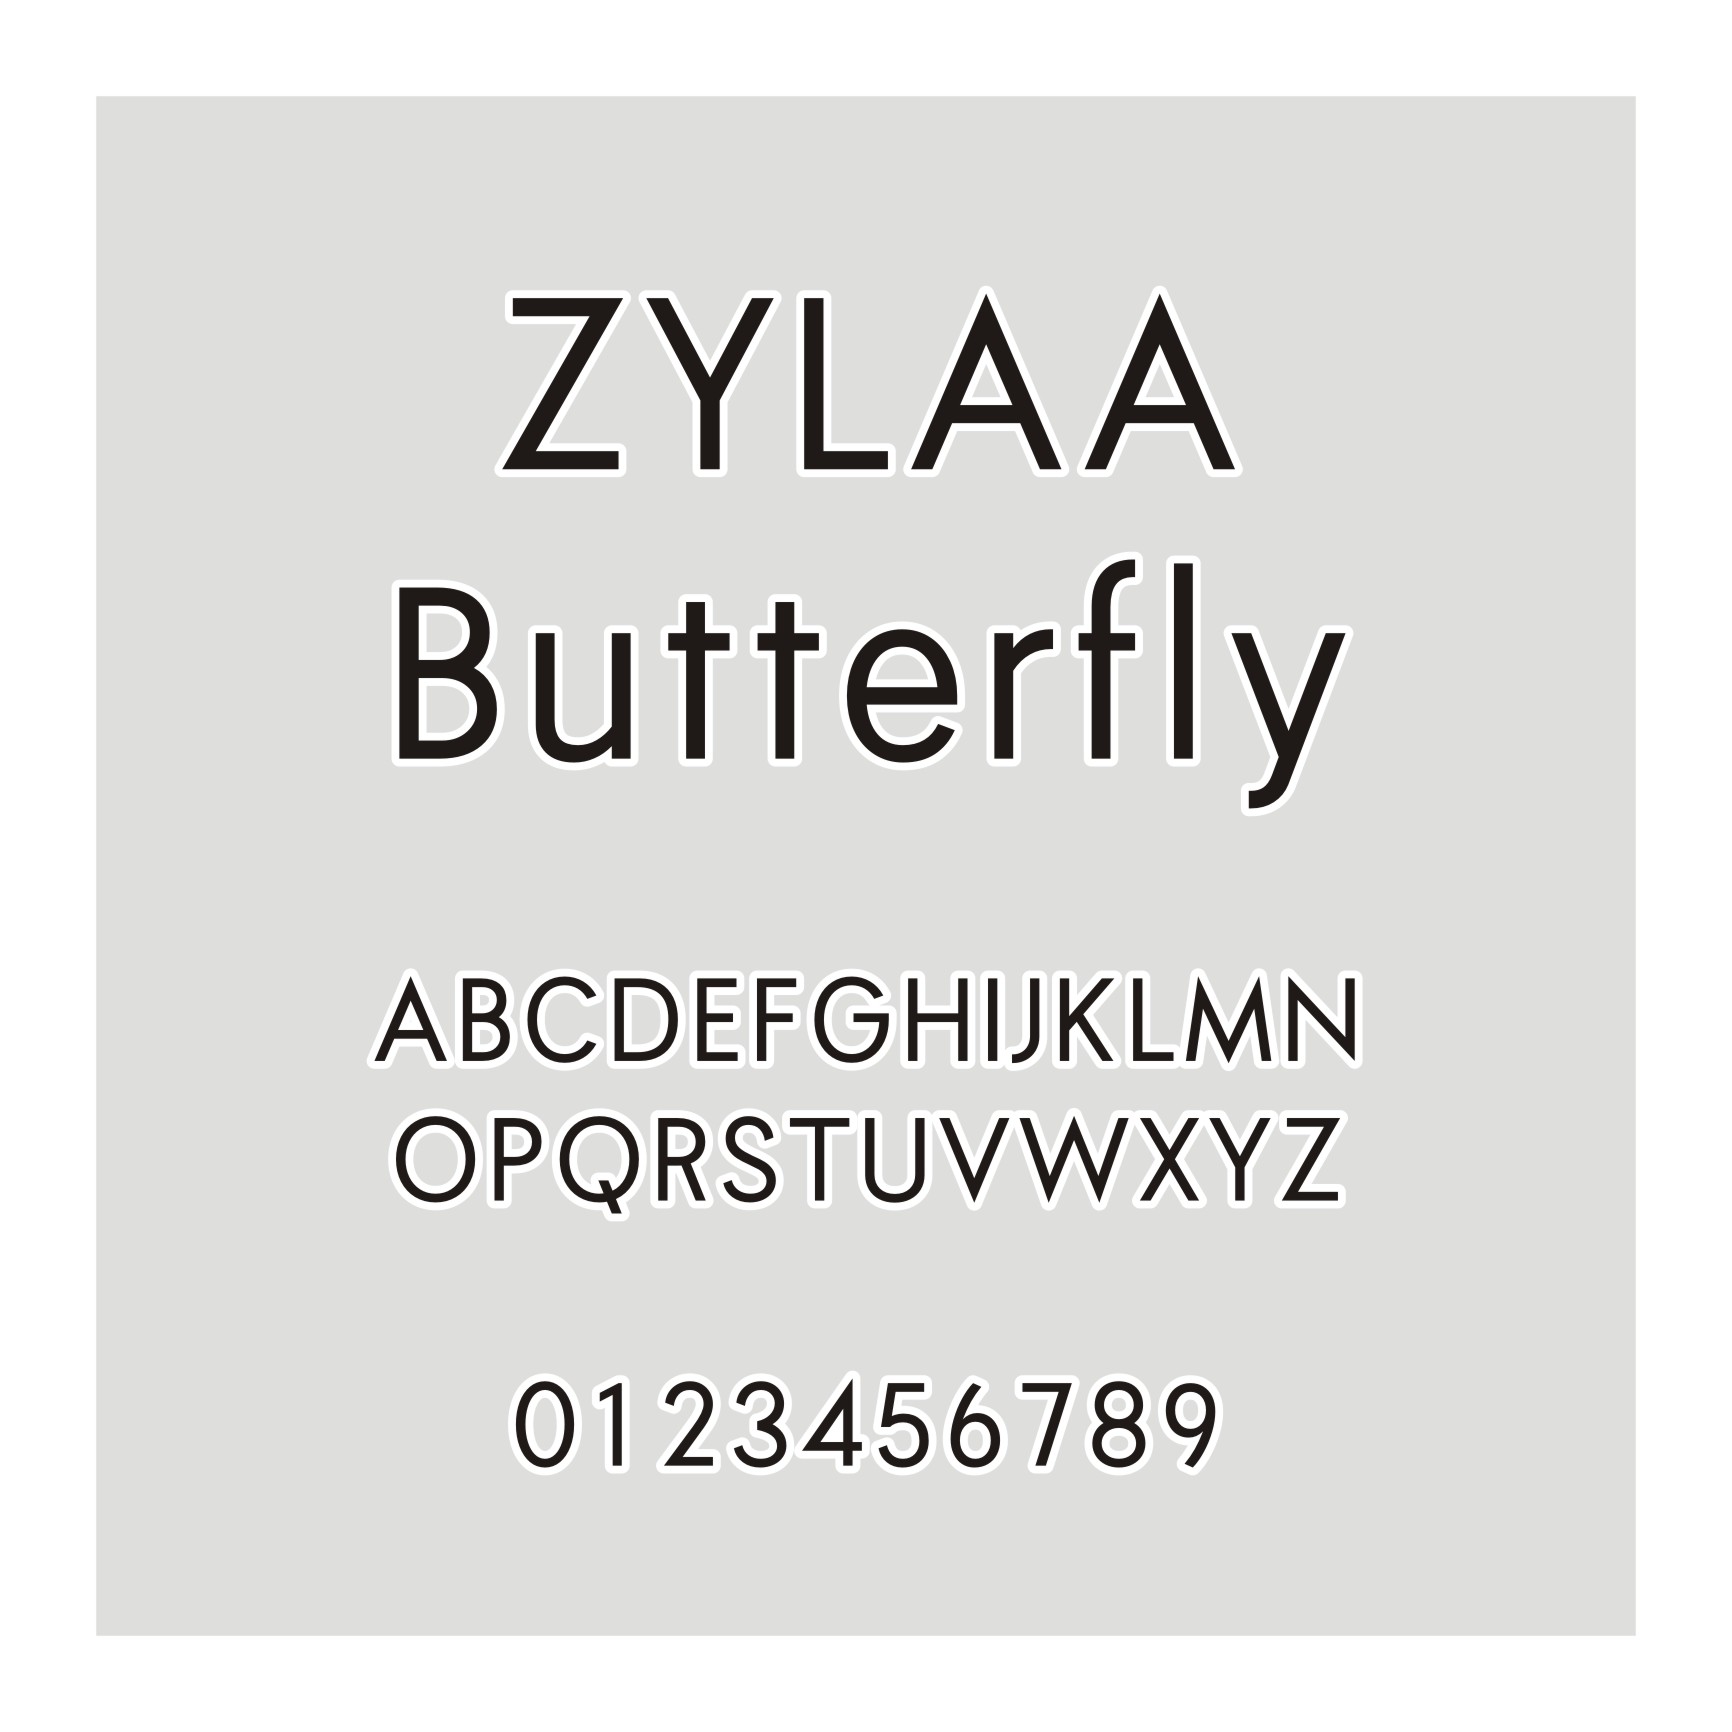 ZYLAA Butterfly